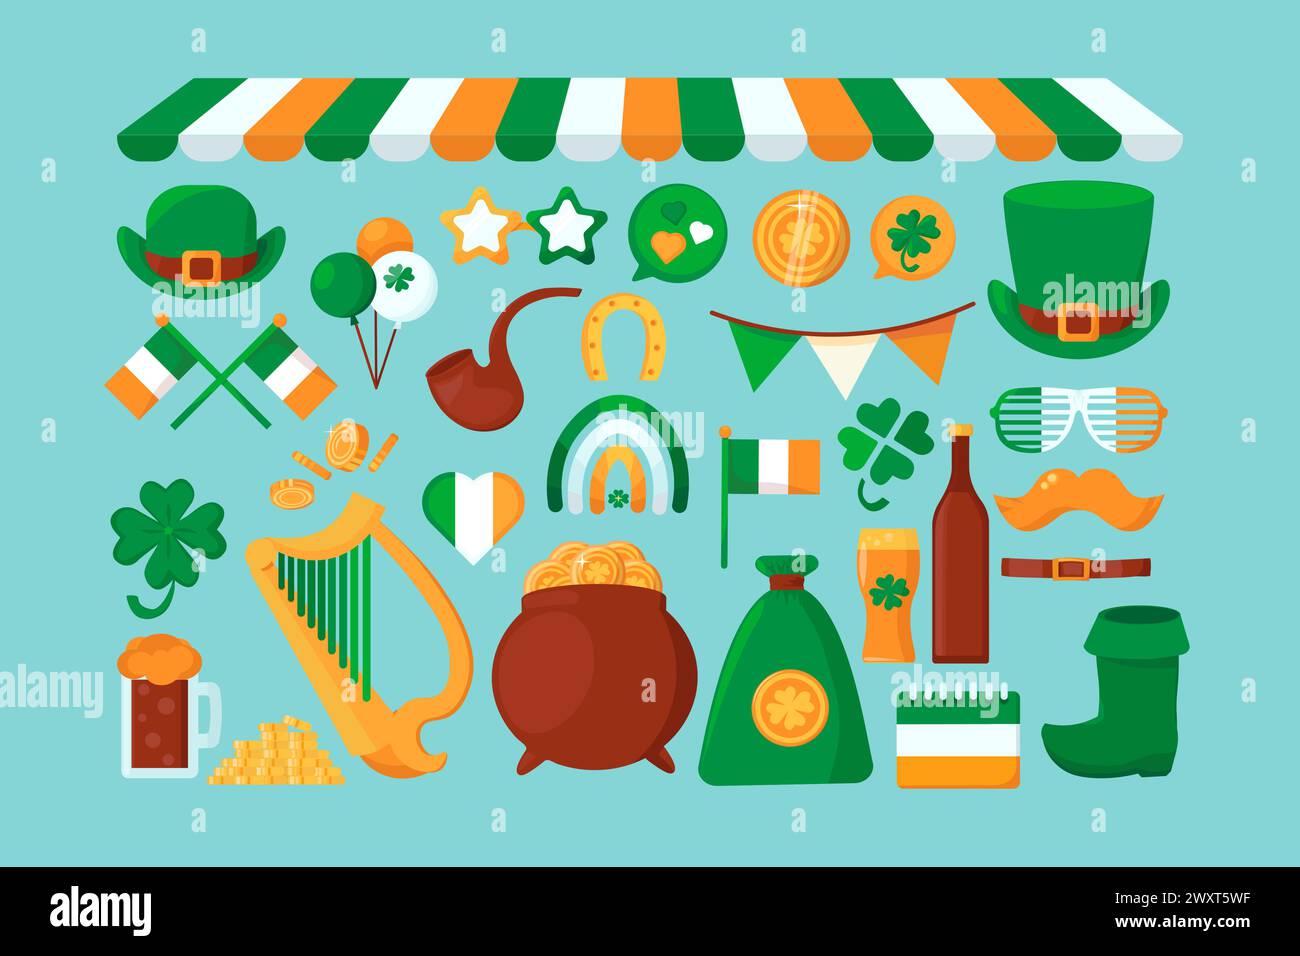 Vector Cartoon Happy Patrick's Day Set. Elementi isolati in primavera nei colori della bandiera irlandese Illustrazione Vettoriale